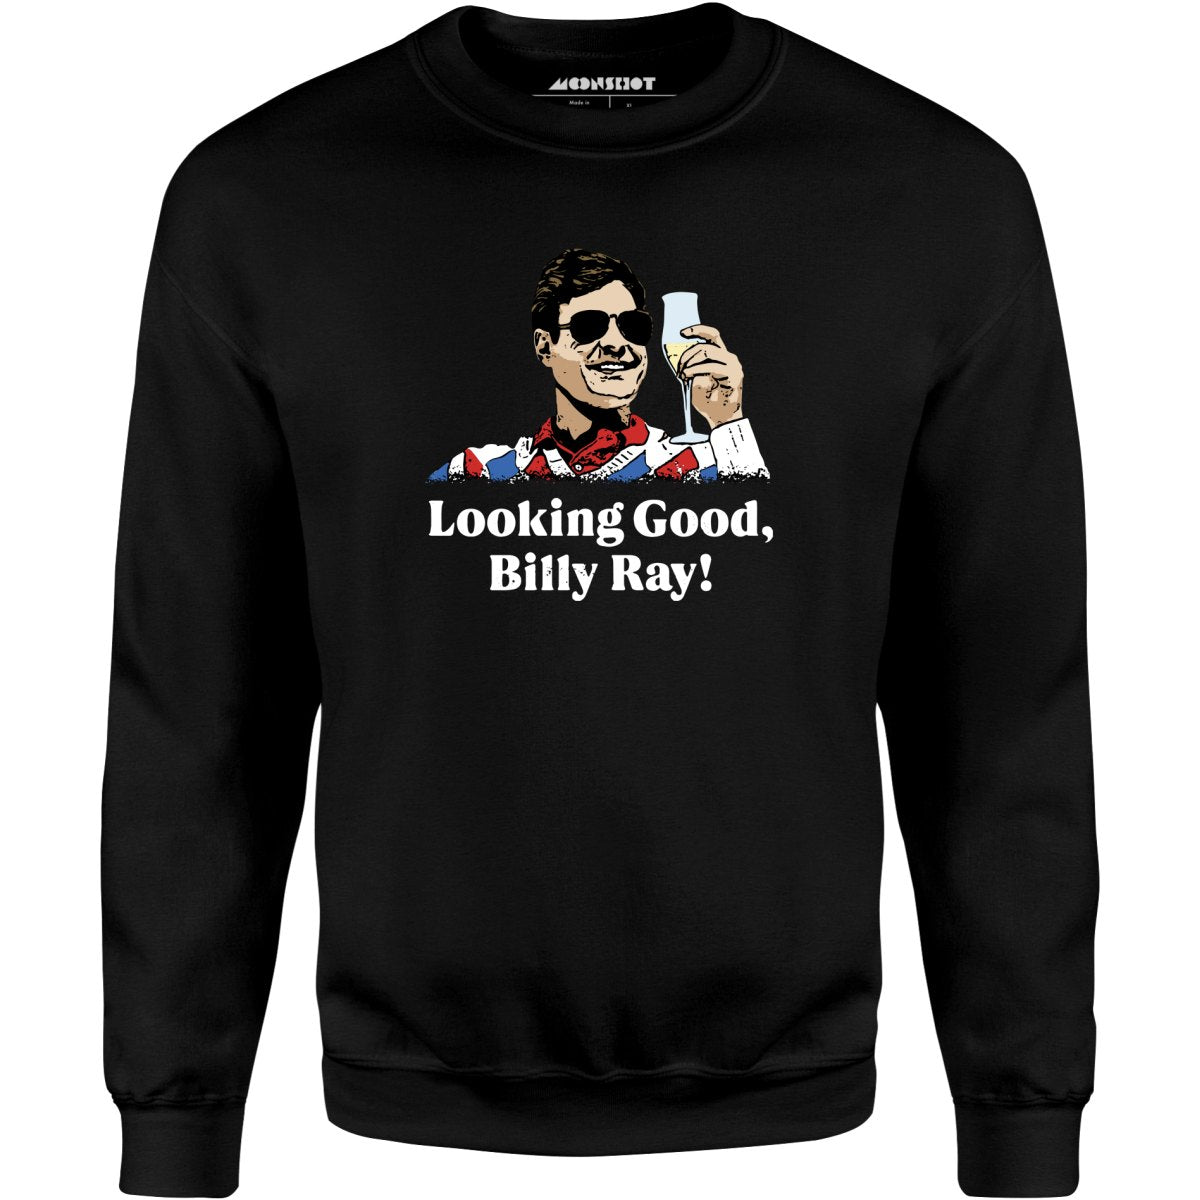 Looking Good, Billy Ray! - Unisex Sweatshirt